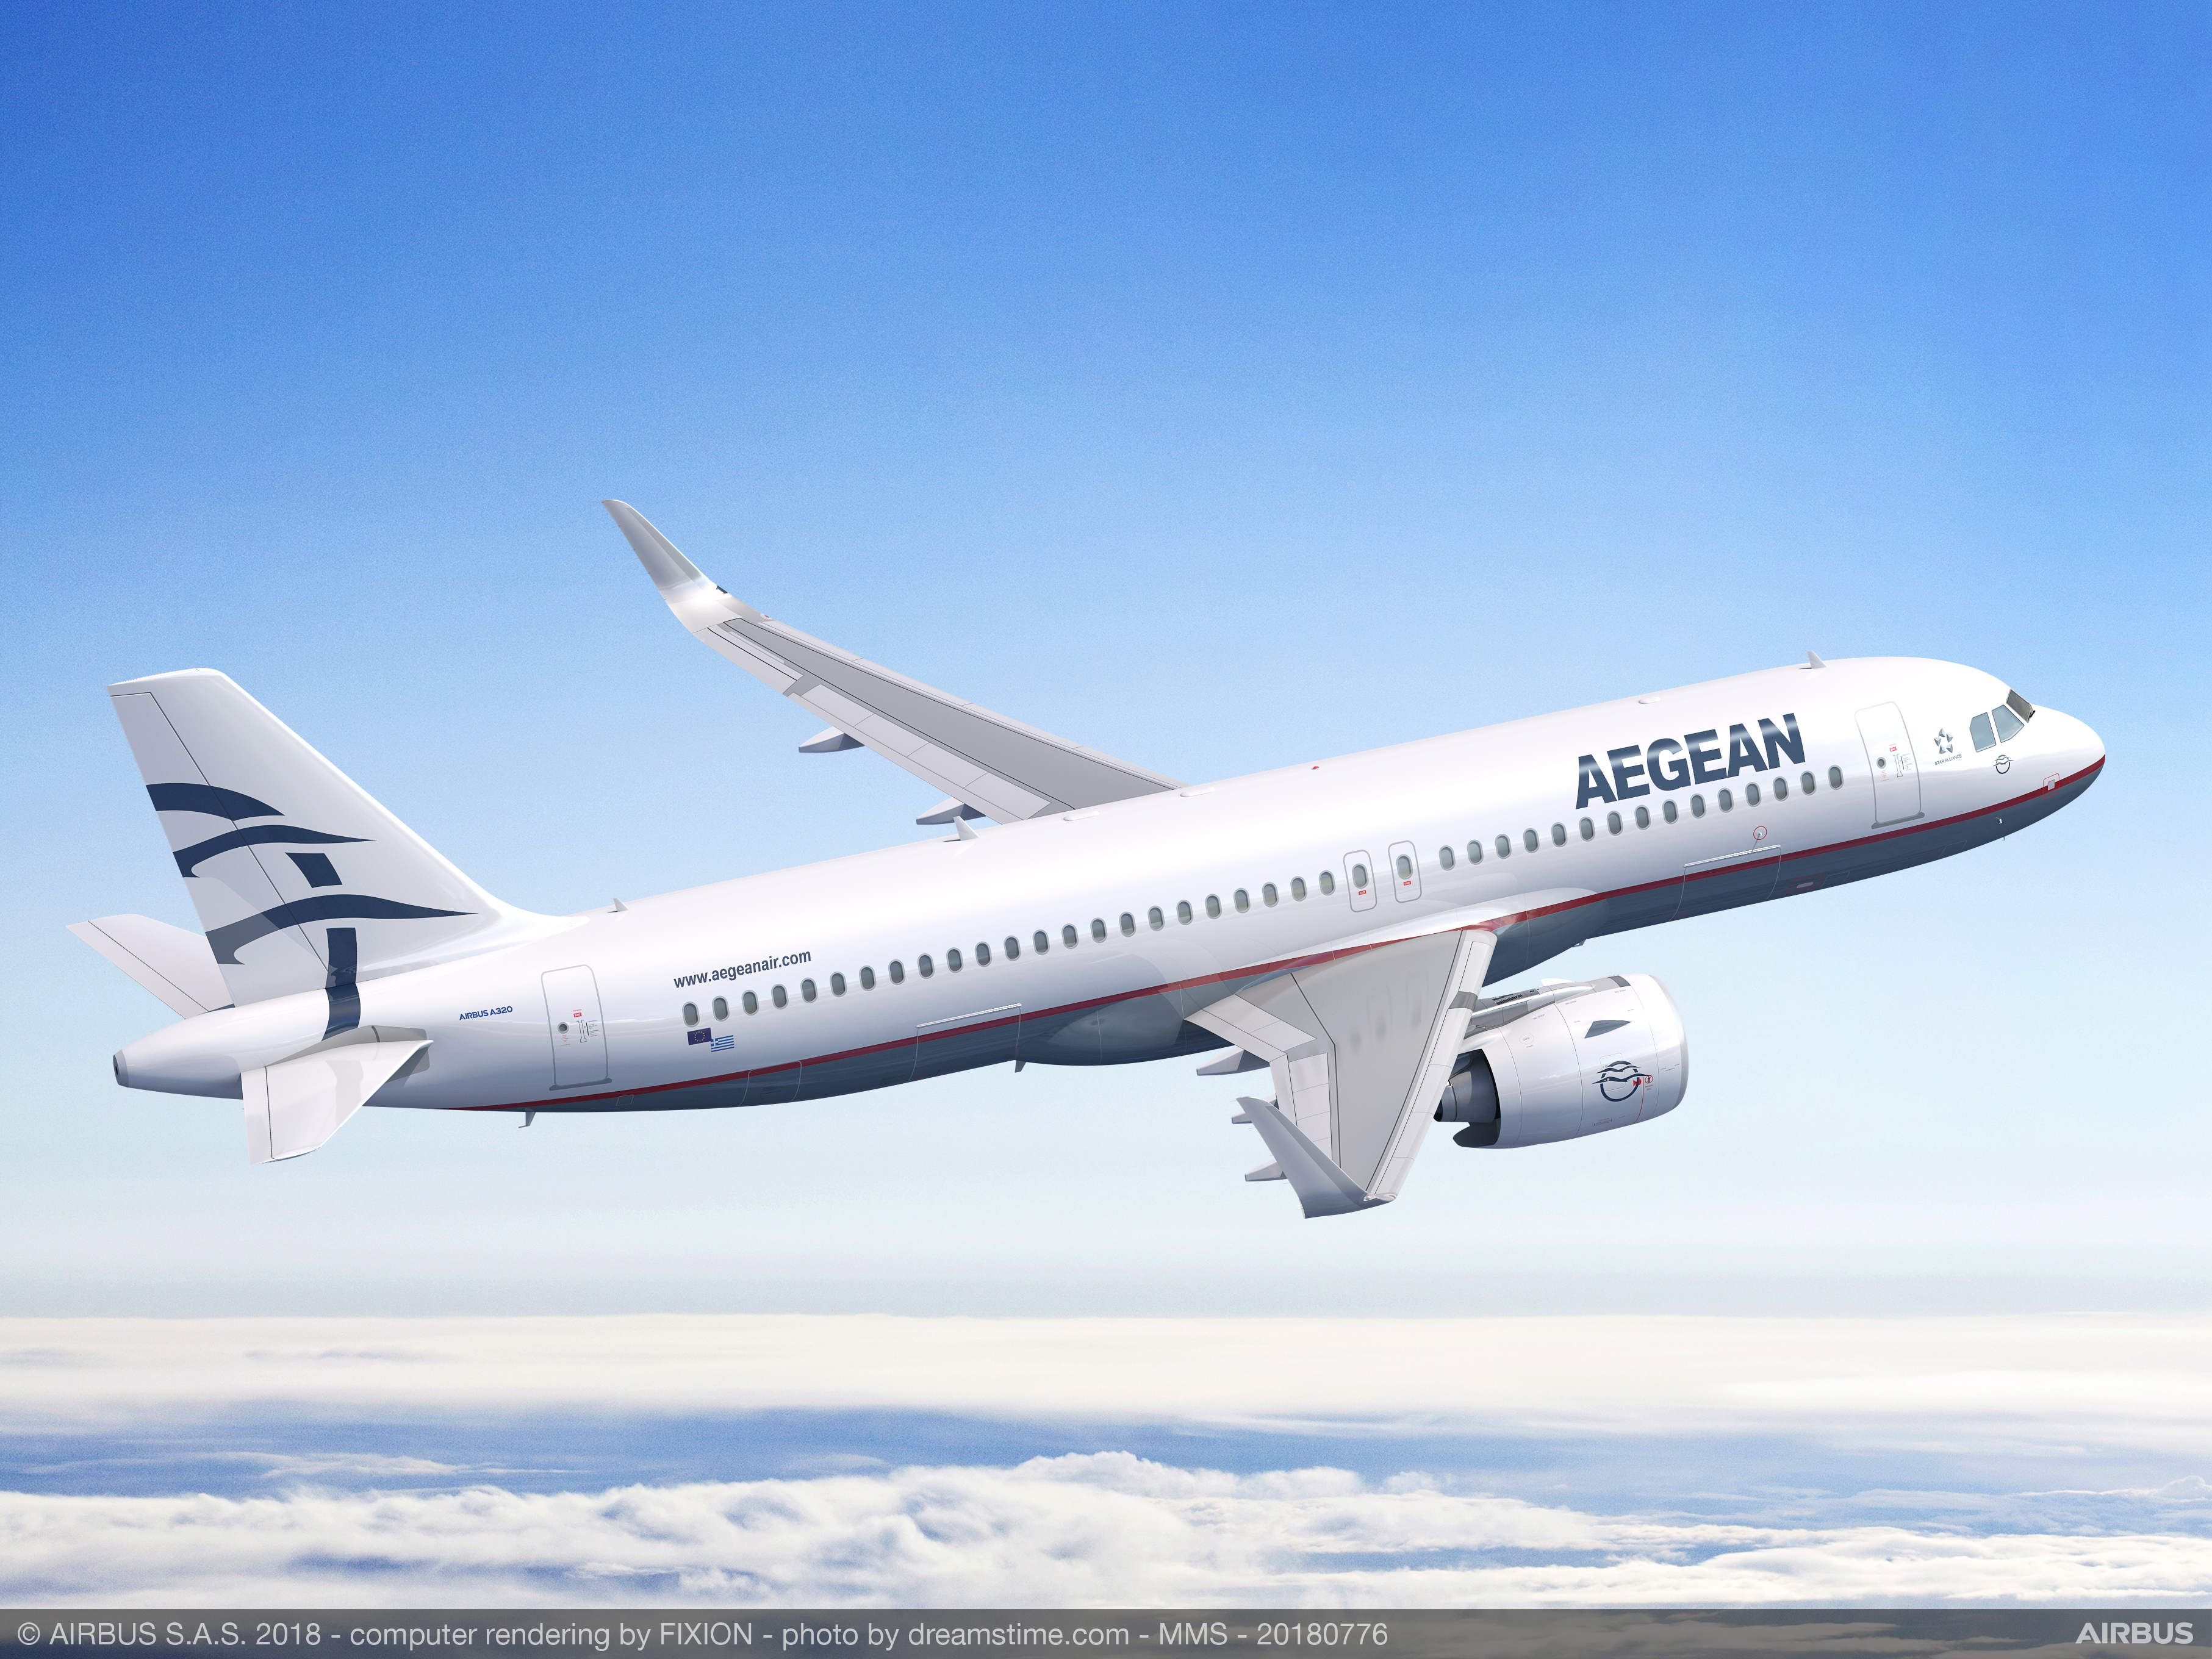 Κινητήρες της Pratt & Whitney και για τα νέα Airbus της AEGEAN